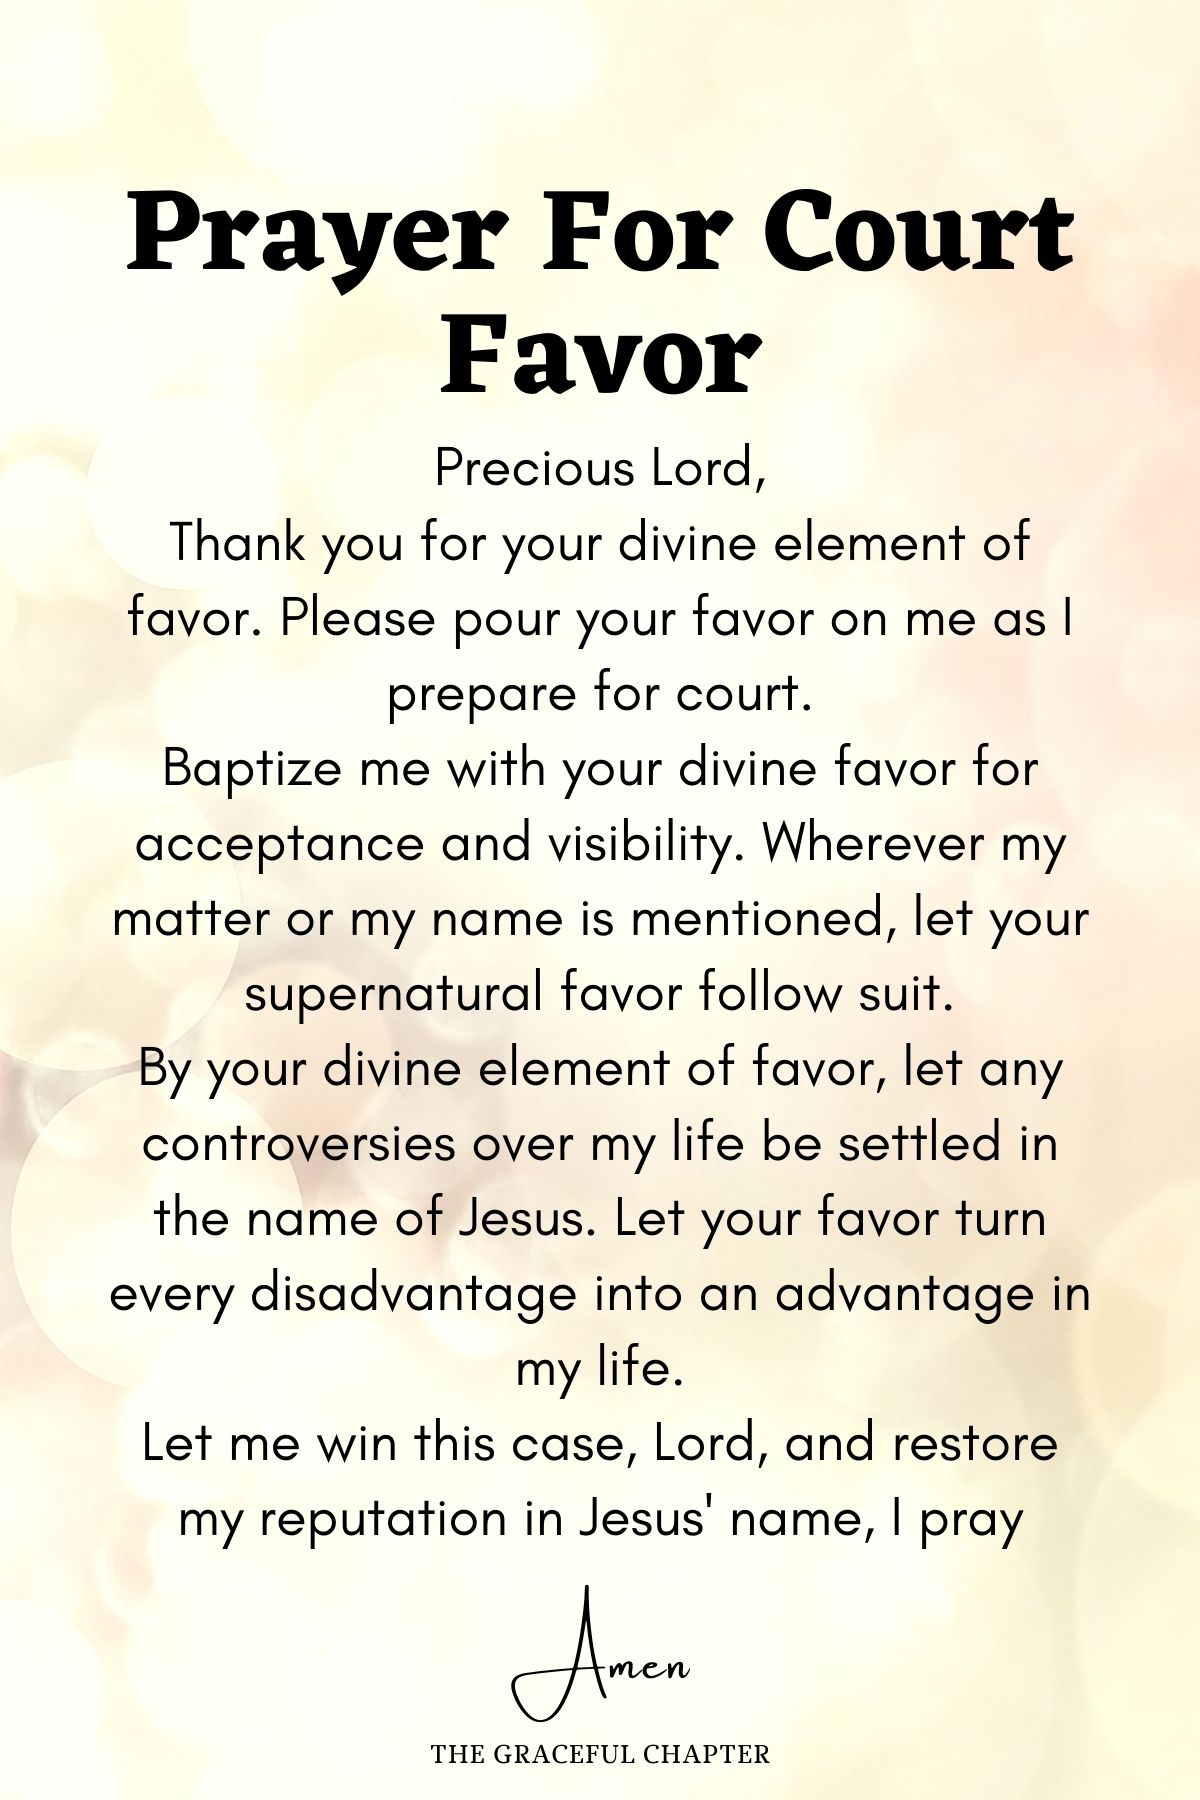 Prayer for court favor